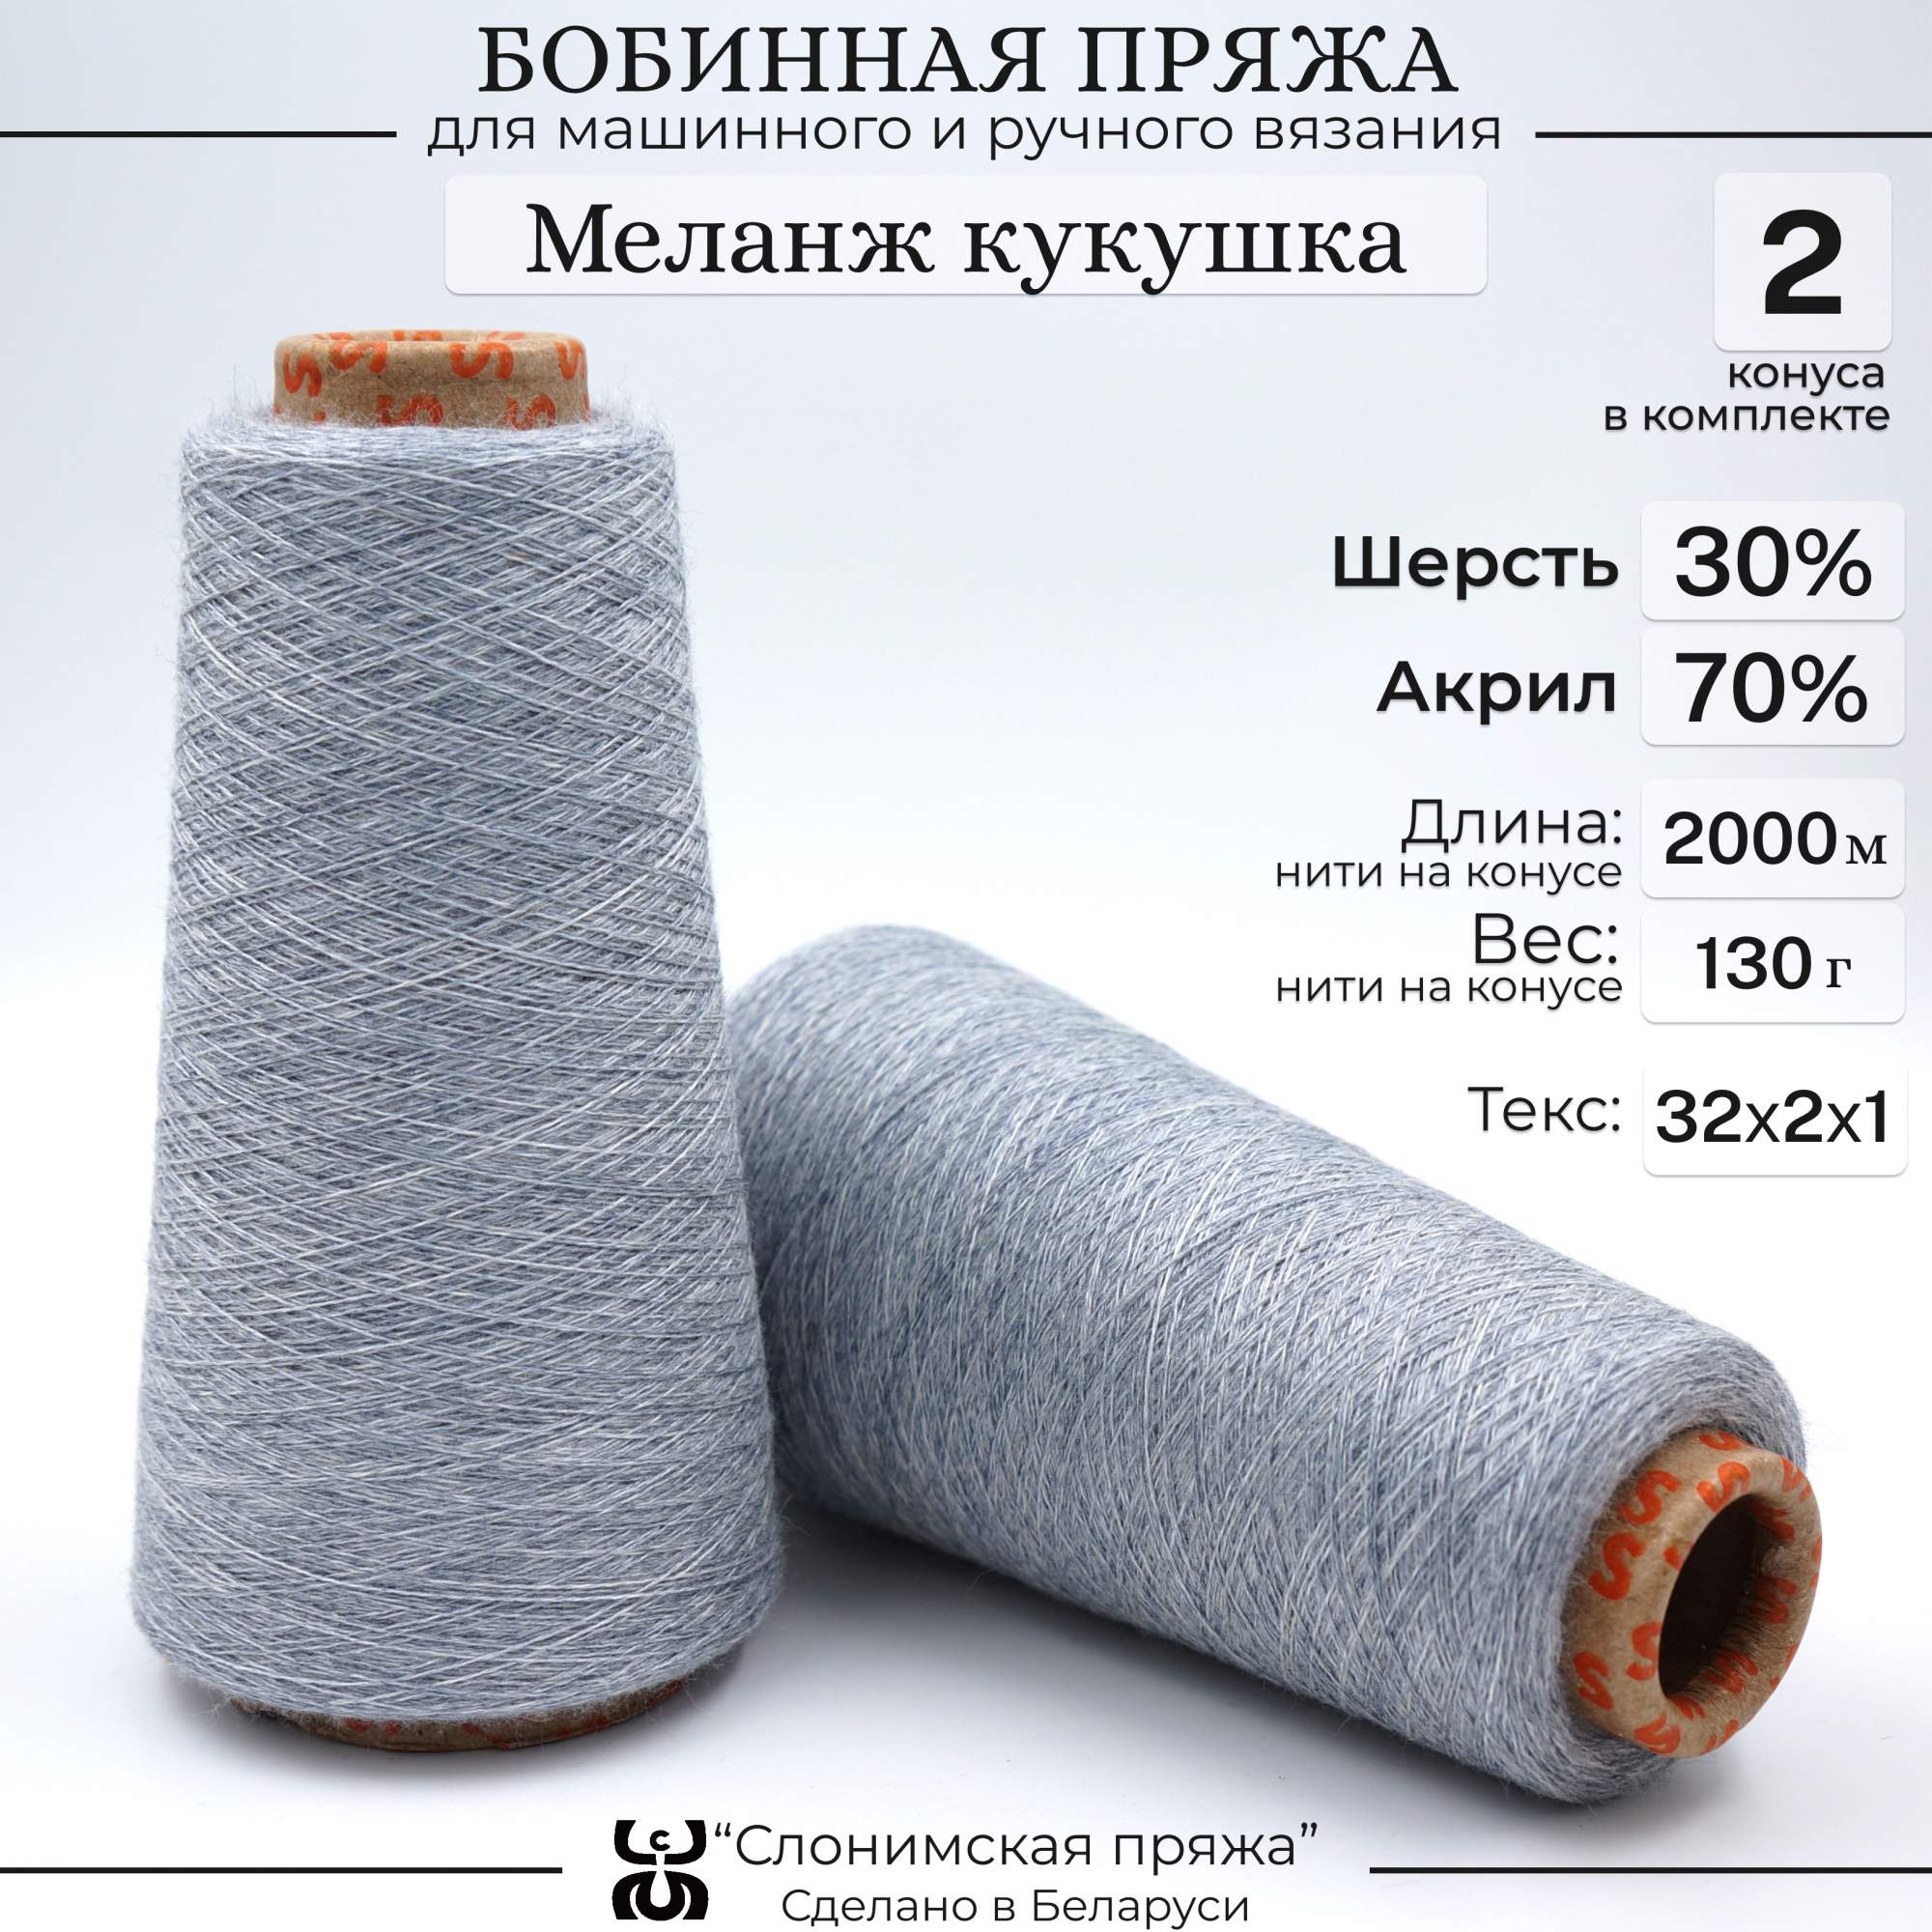 Бобинная пряжа для вязания Слонимская пряжа 30% шерсть-70% акрил меланж кукушка